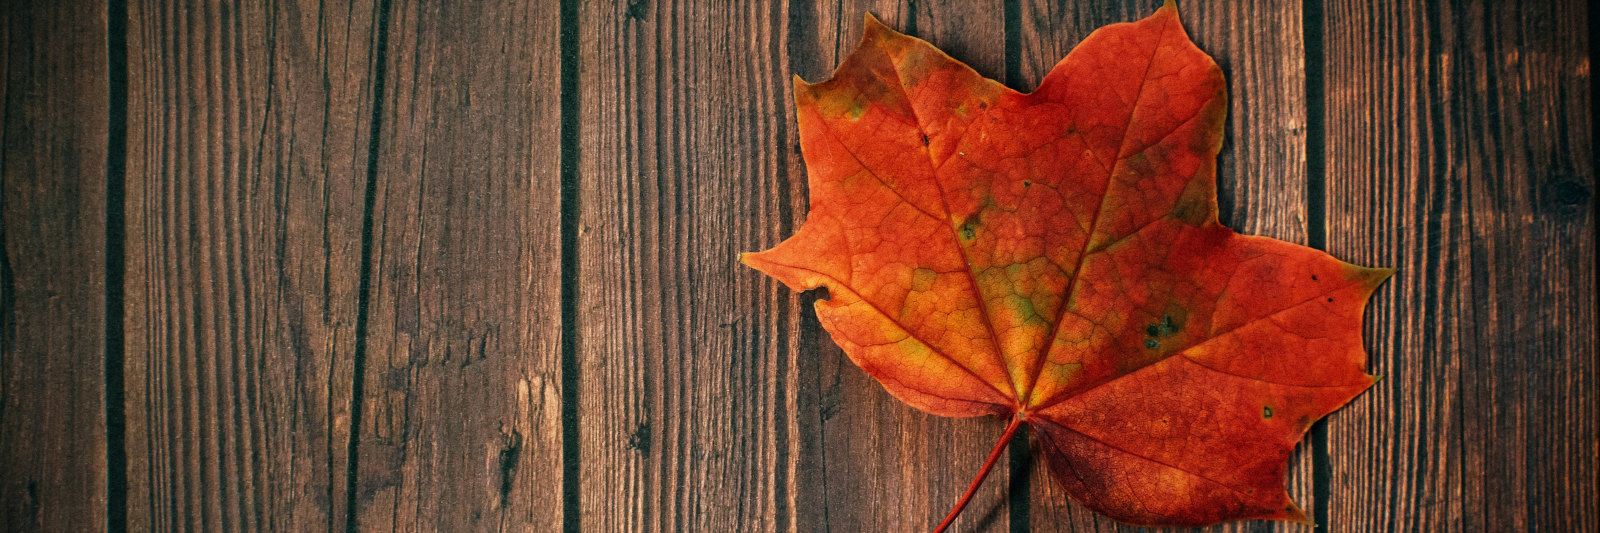 leaf on wooden planks